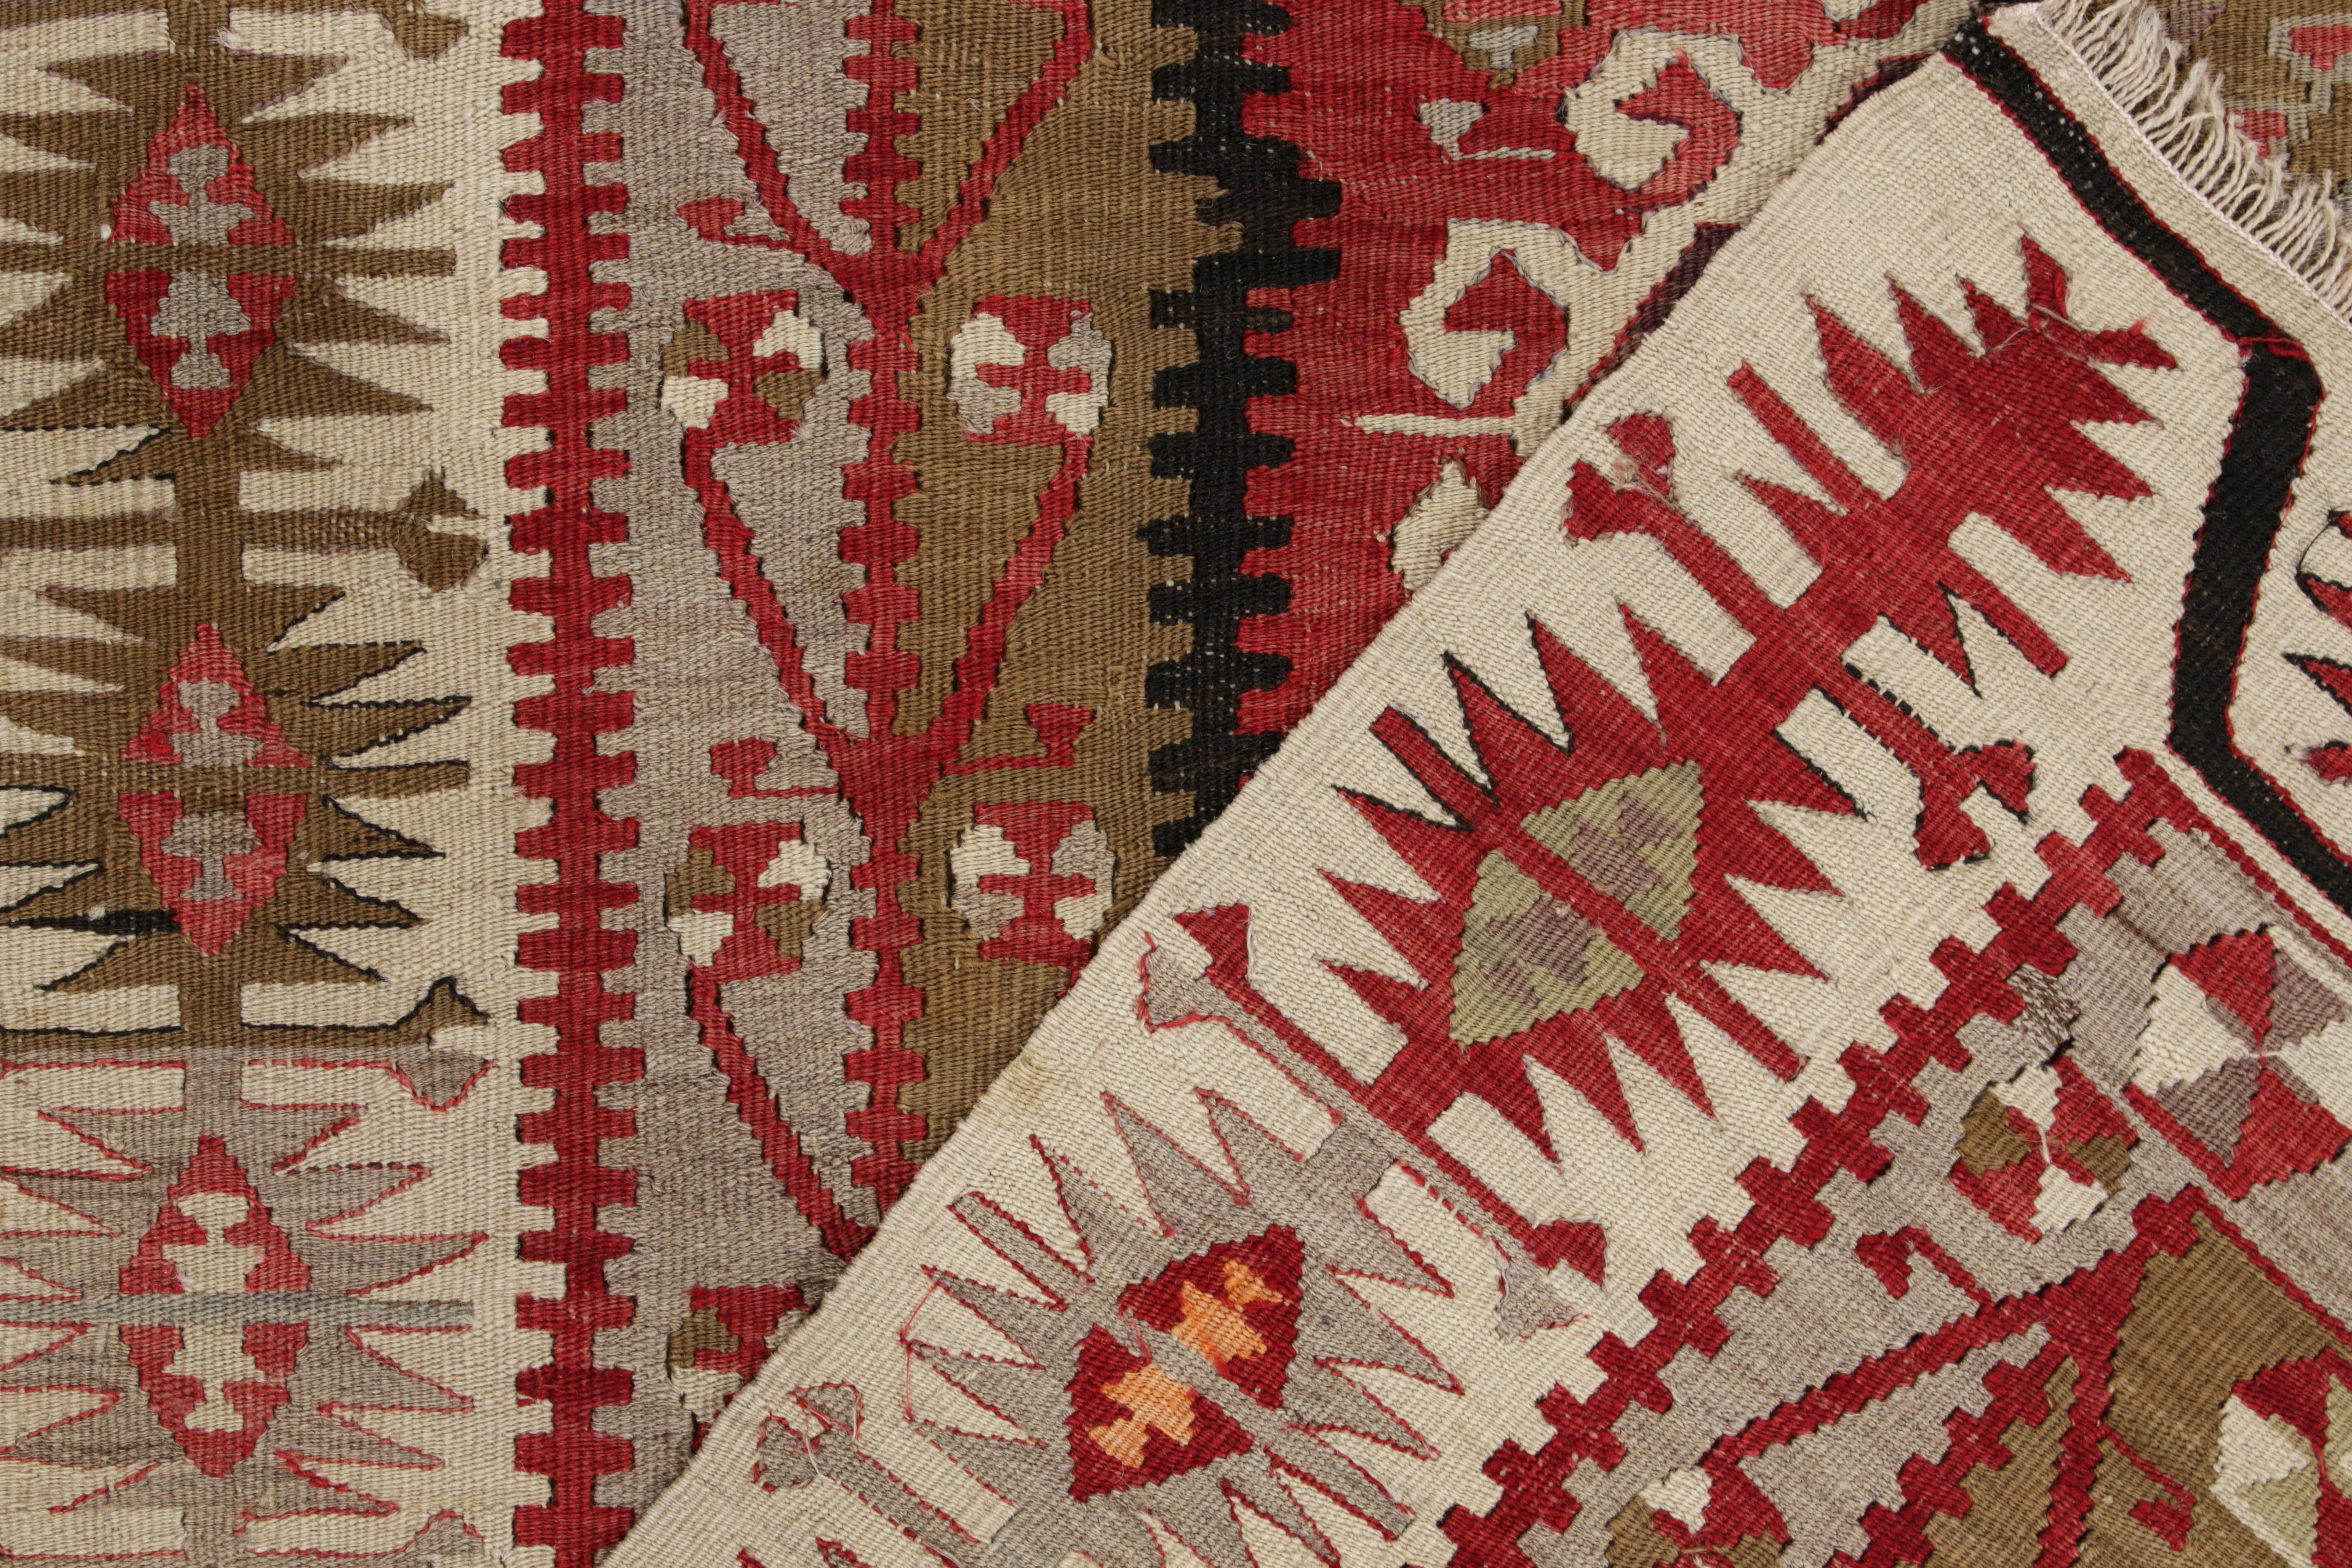 Hand-Knotted Vintage Kayseri Kilim Rug, Red, Beige-Brown Geometric Pattern by Rug & Kilim For Sale